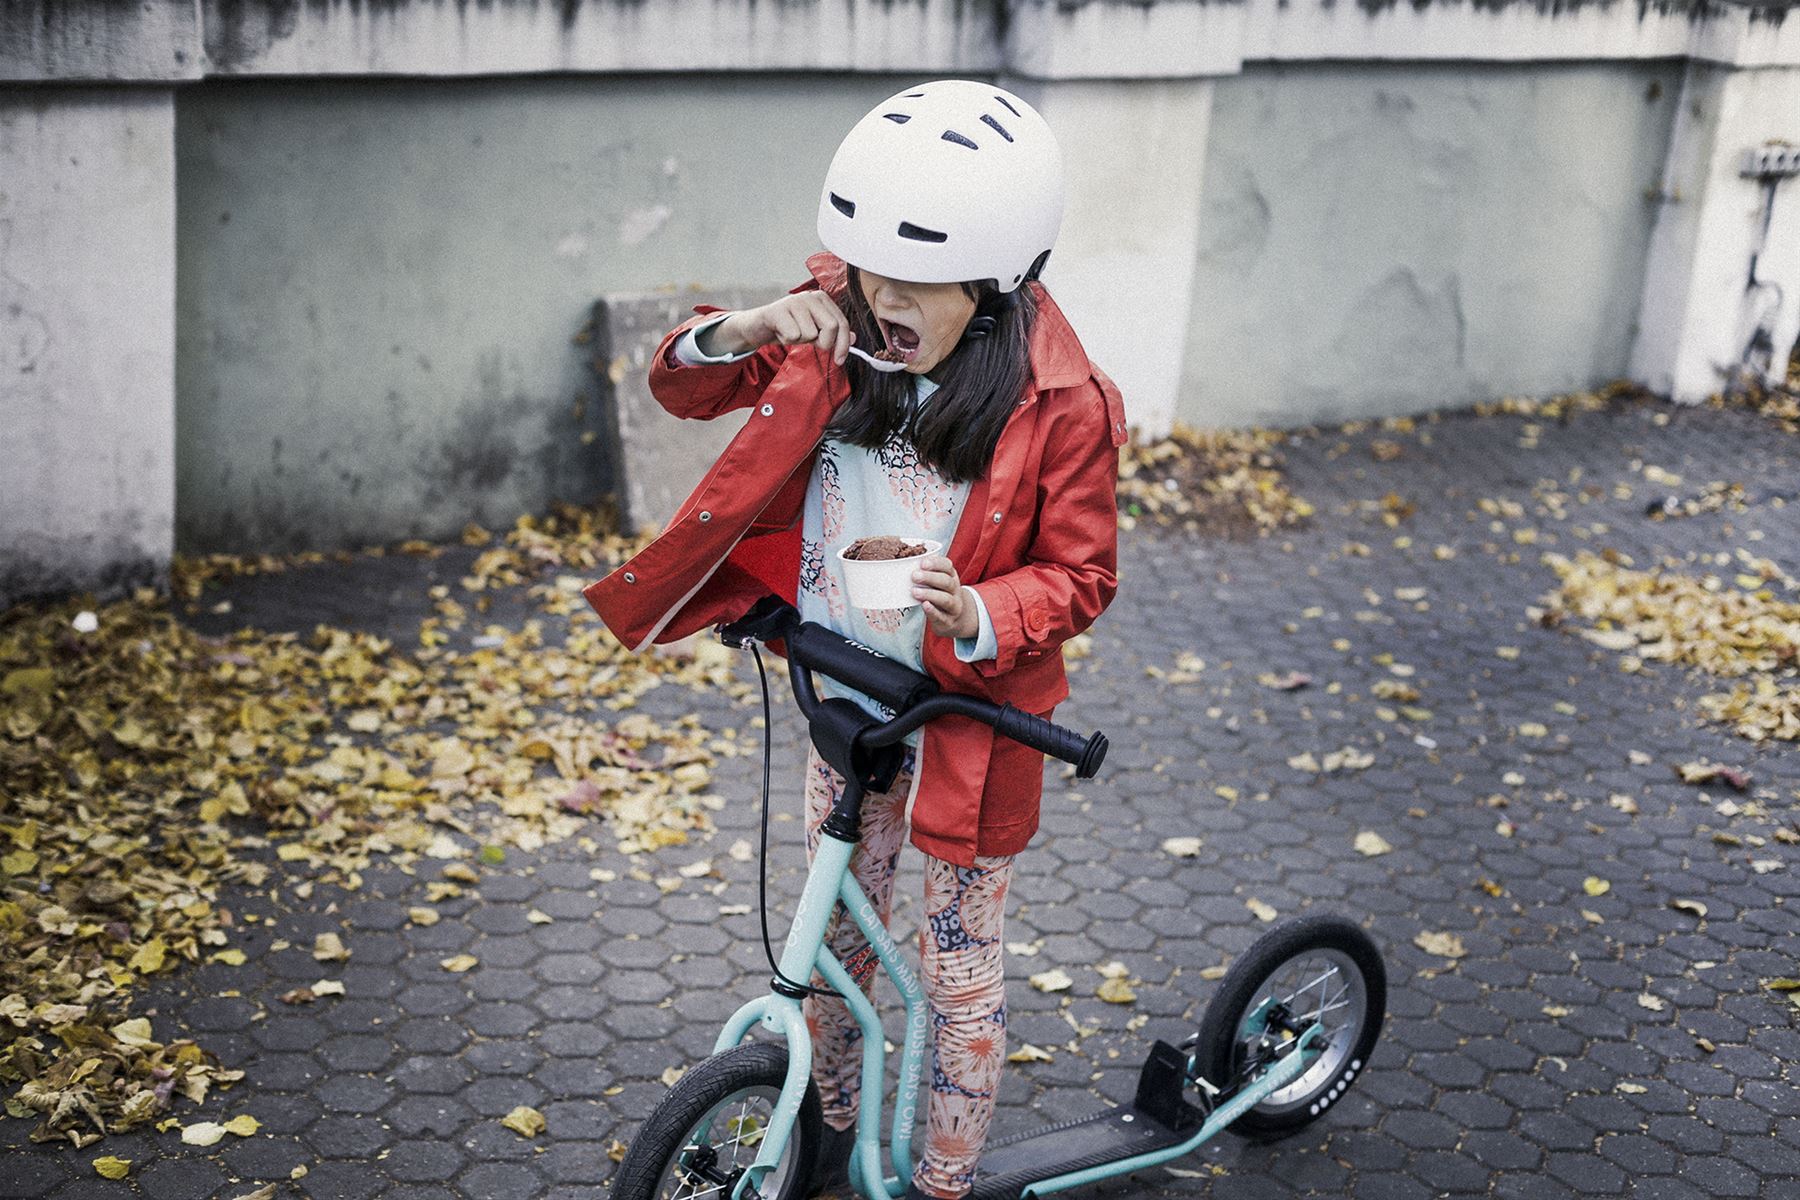 Kick Scooter für Kids Yedoo New WZOOM Green Tretroller Kinderroller mit Luftreifen ab 6 Jahre